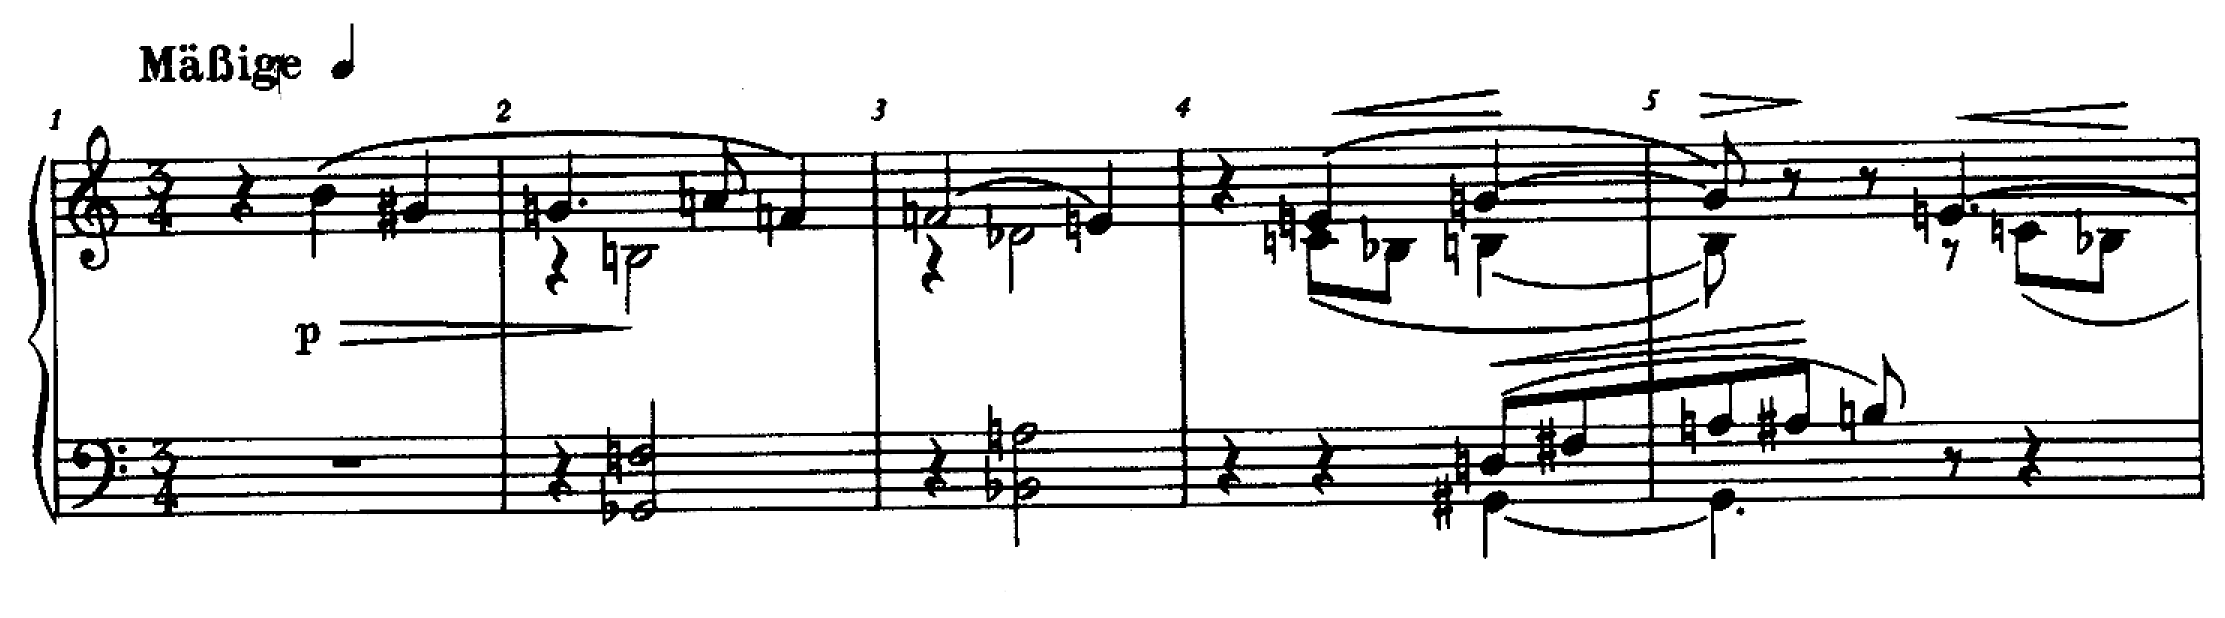 荀伯克作品 11 的三首鋼琴小品，半音運用擺脫傳統的和聲體系。把第一首的主旋律中的音程仔細拆開，會發現這些細小的組合，會在全曲以不同影態出現，有時是橫向的旋律，有時是垂直的和弦。這種創作思維，把整個音樂創作的方法扭轉。 